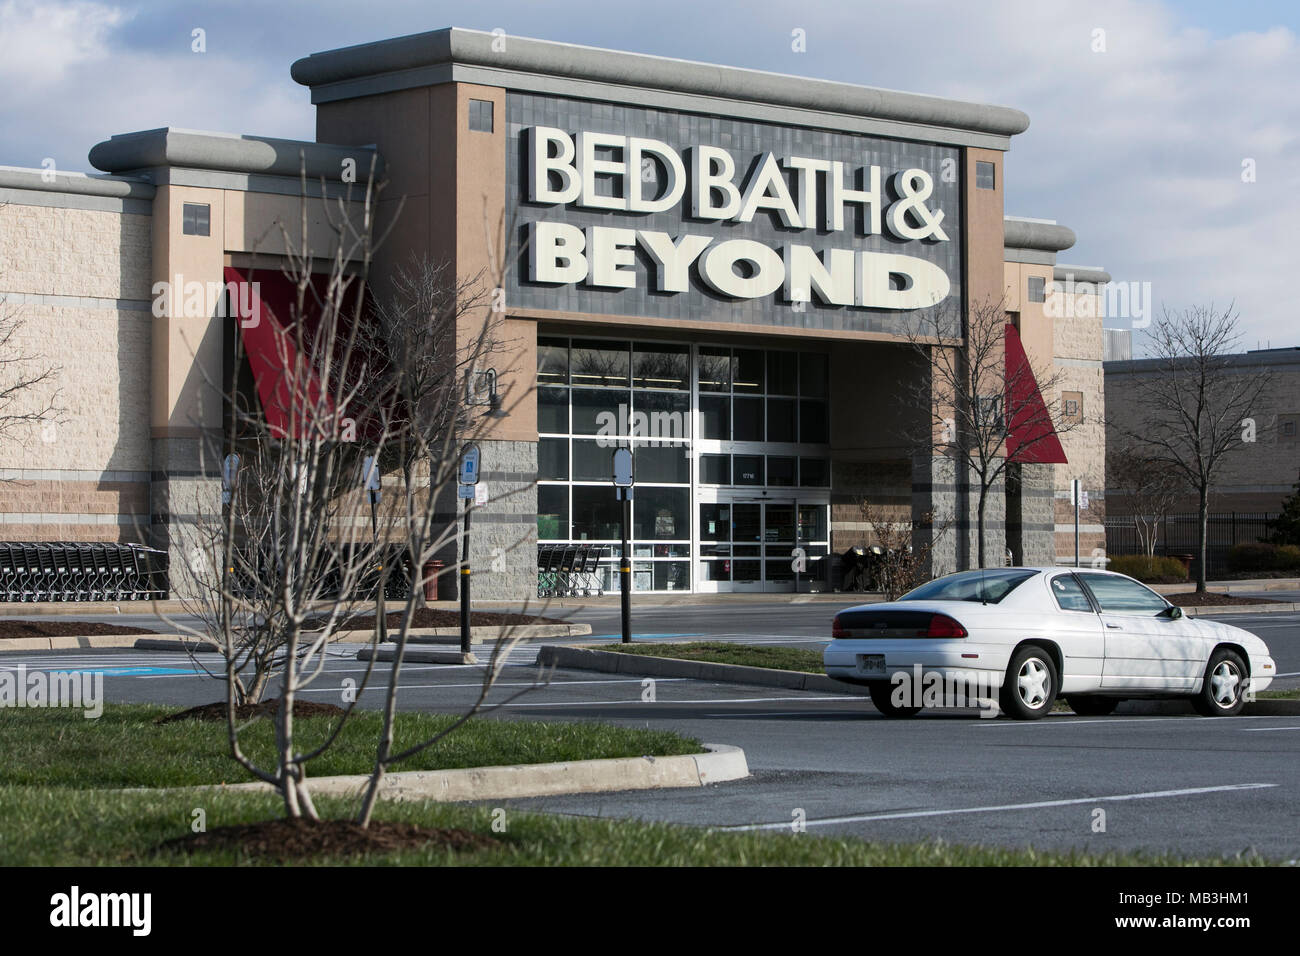 Un Bed Bath & Beyond vu le logo sur un magasin de détail/de Hagerstown, Maryland le 5 avril 2018. Banque D'Images